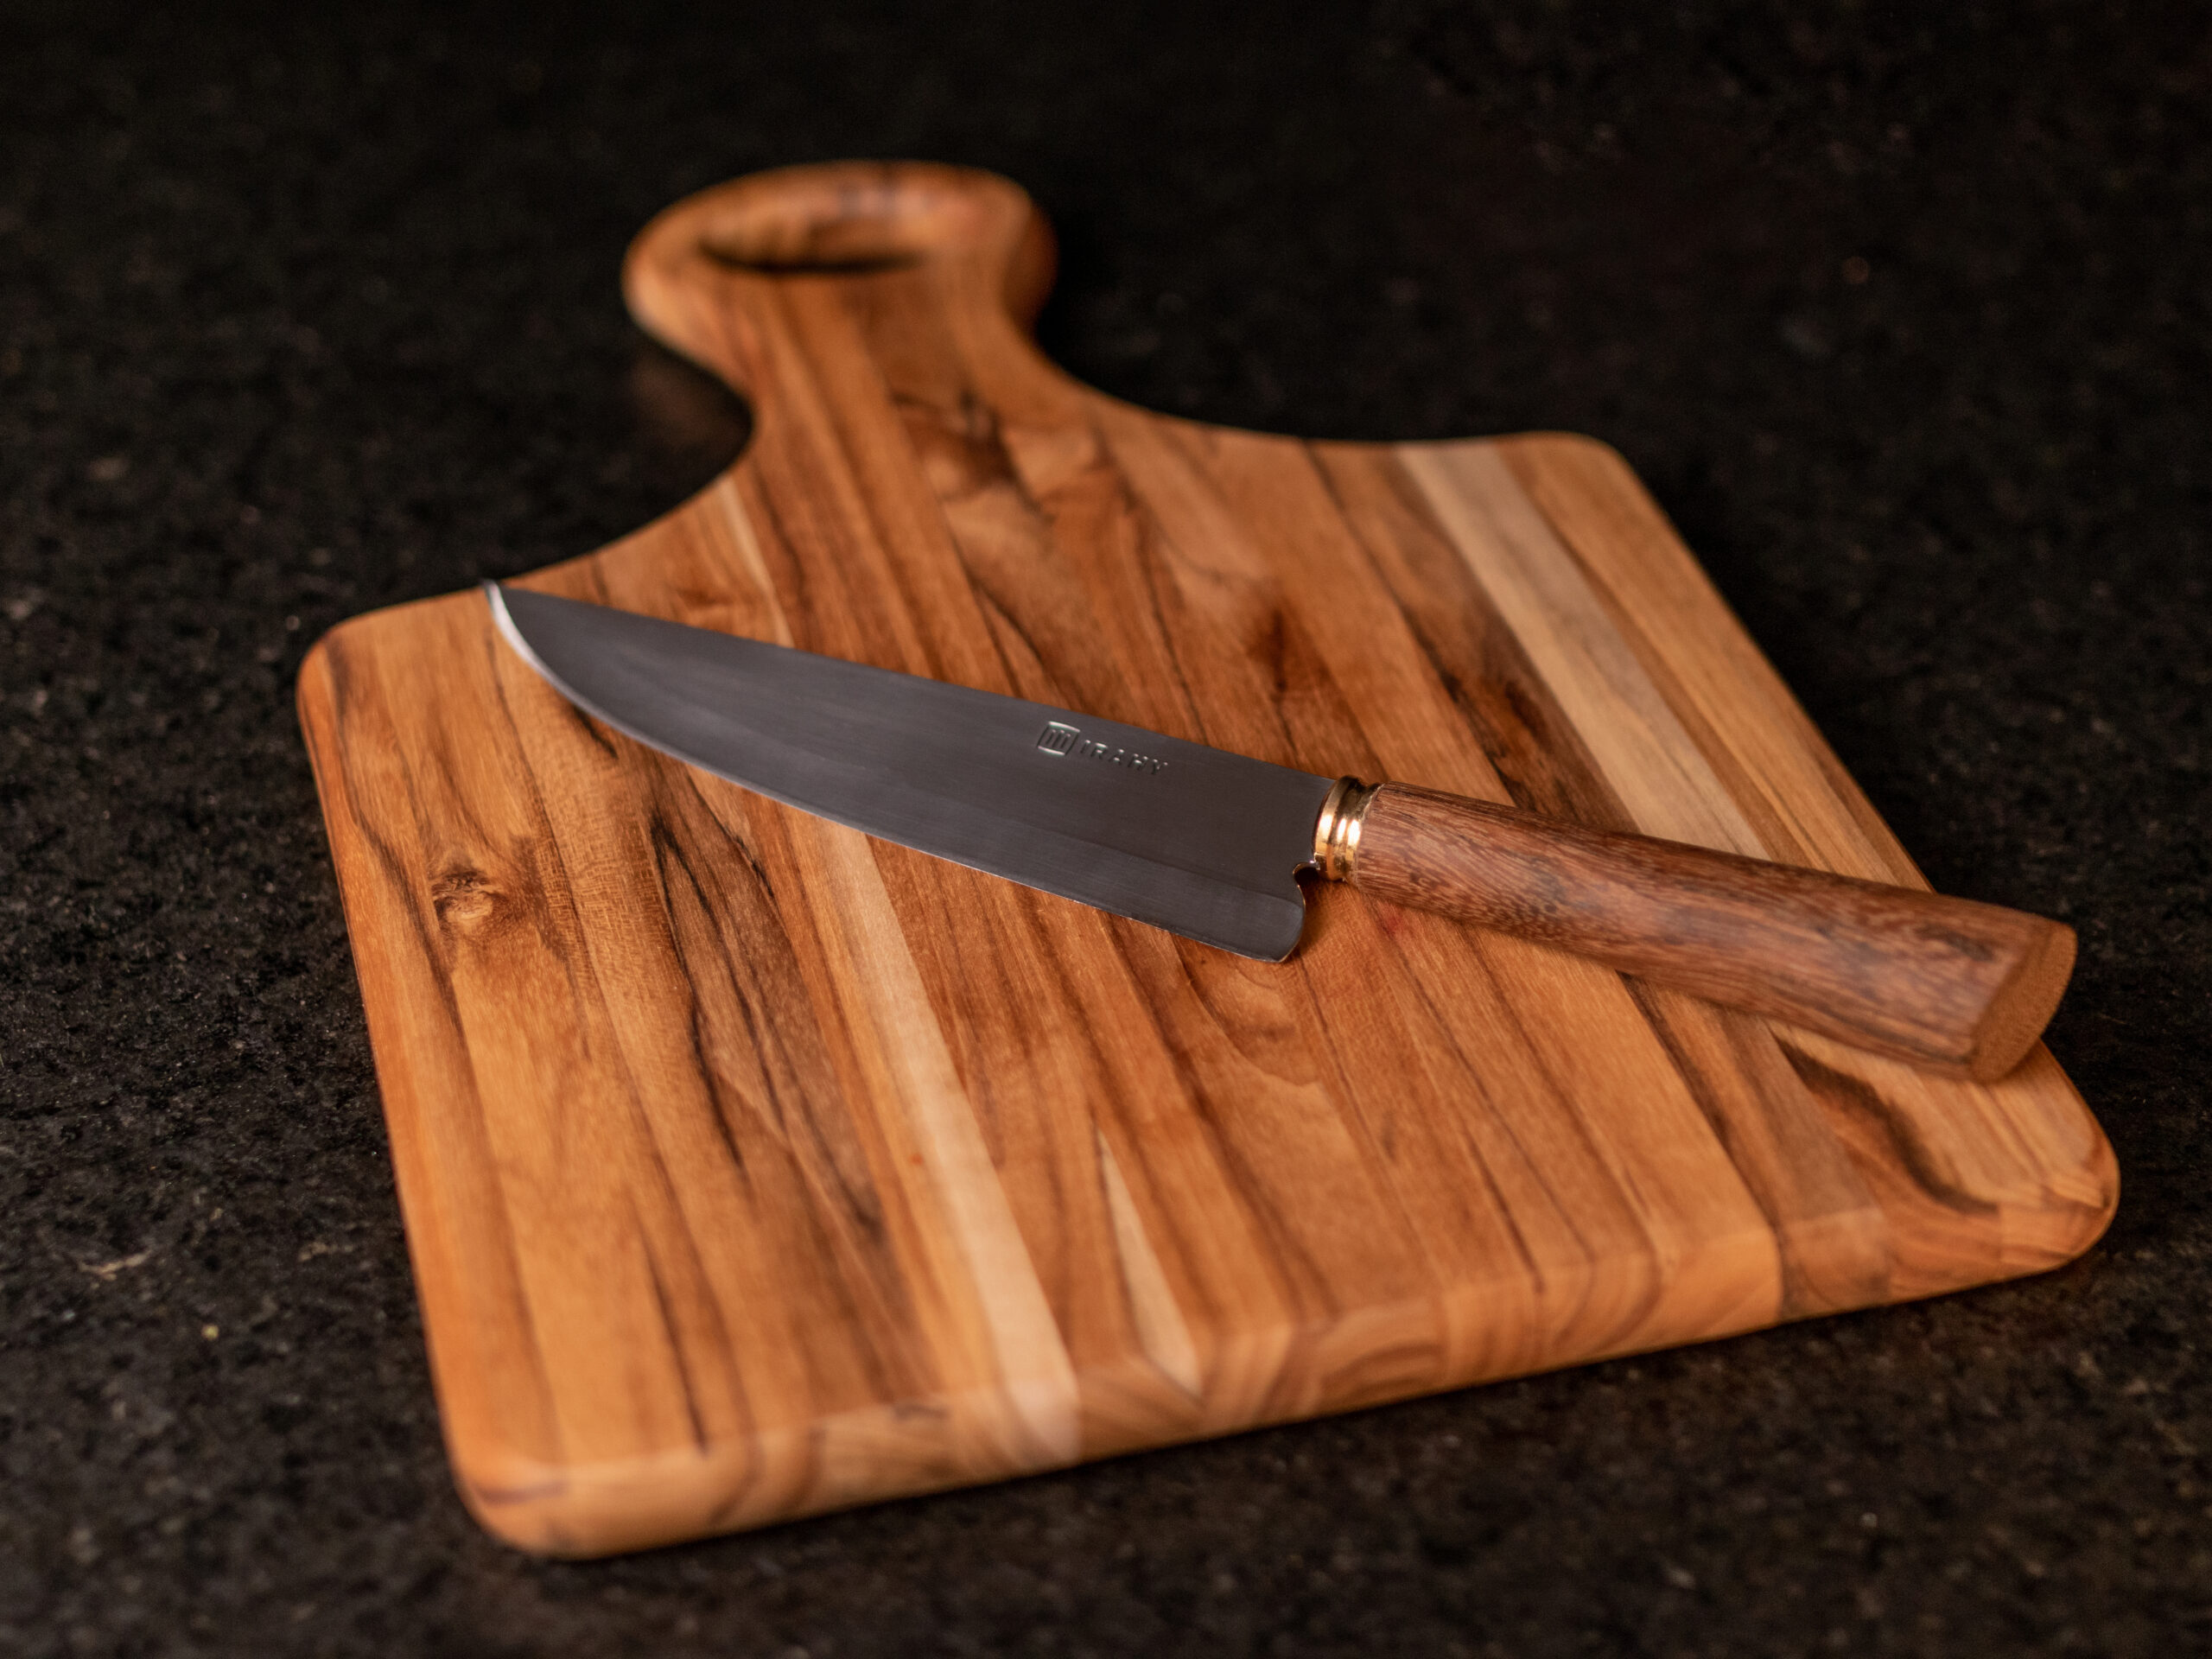 Como são fabricadas as facas artesanais?